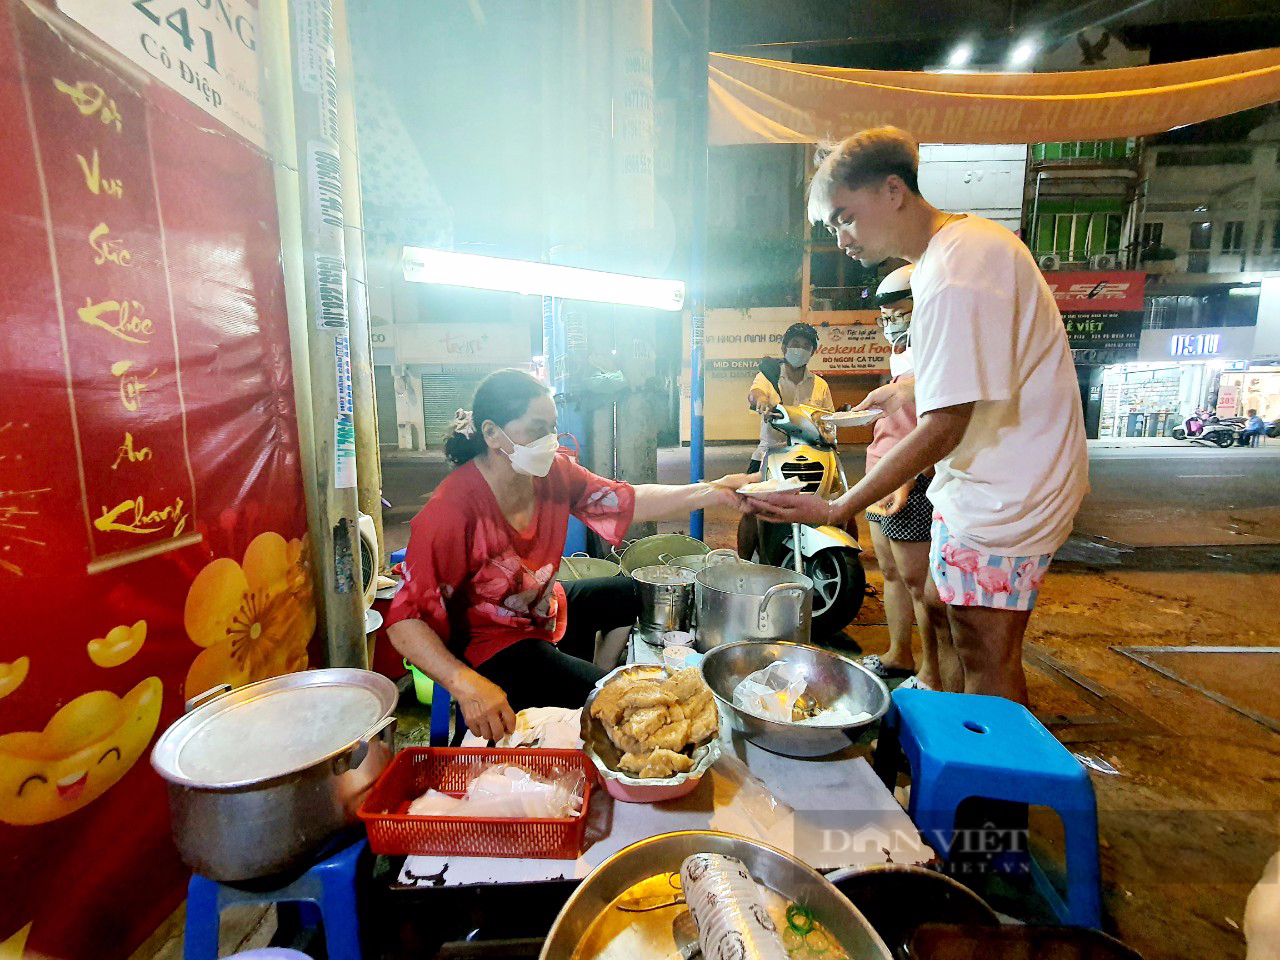 Sài Gòn quán: Lạ lùng quán chè nóng vỉa hè đường Võ Văn Tần, trời hầm hập mà khách vẫn đông - 1